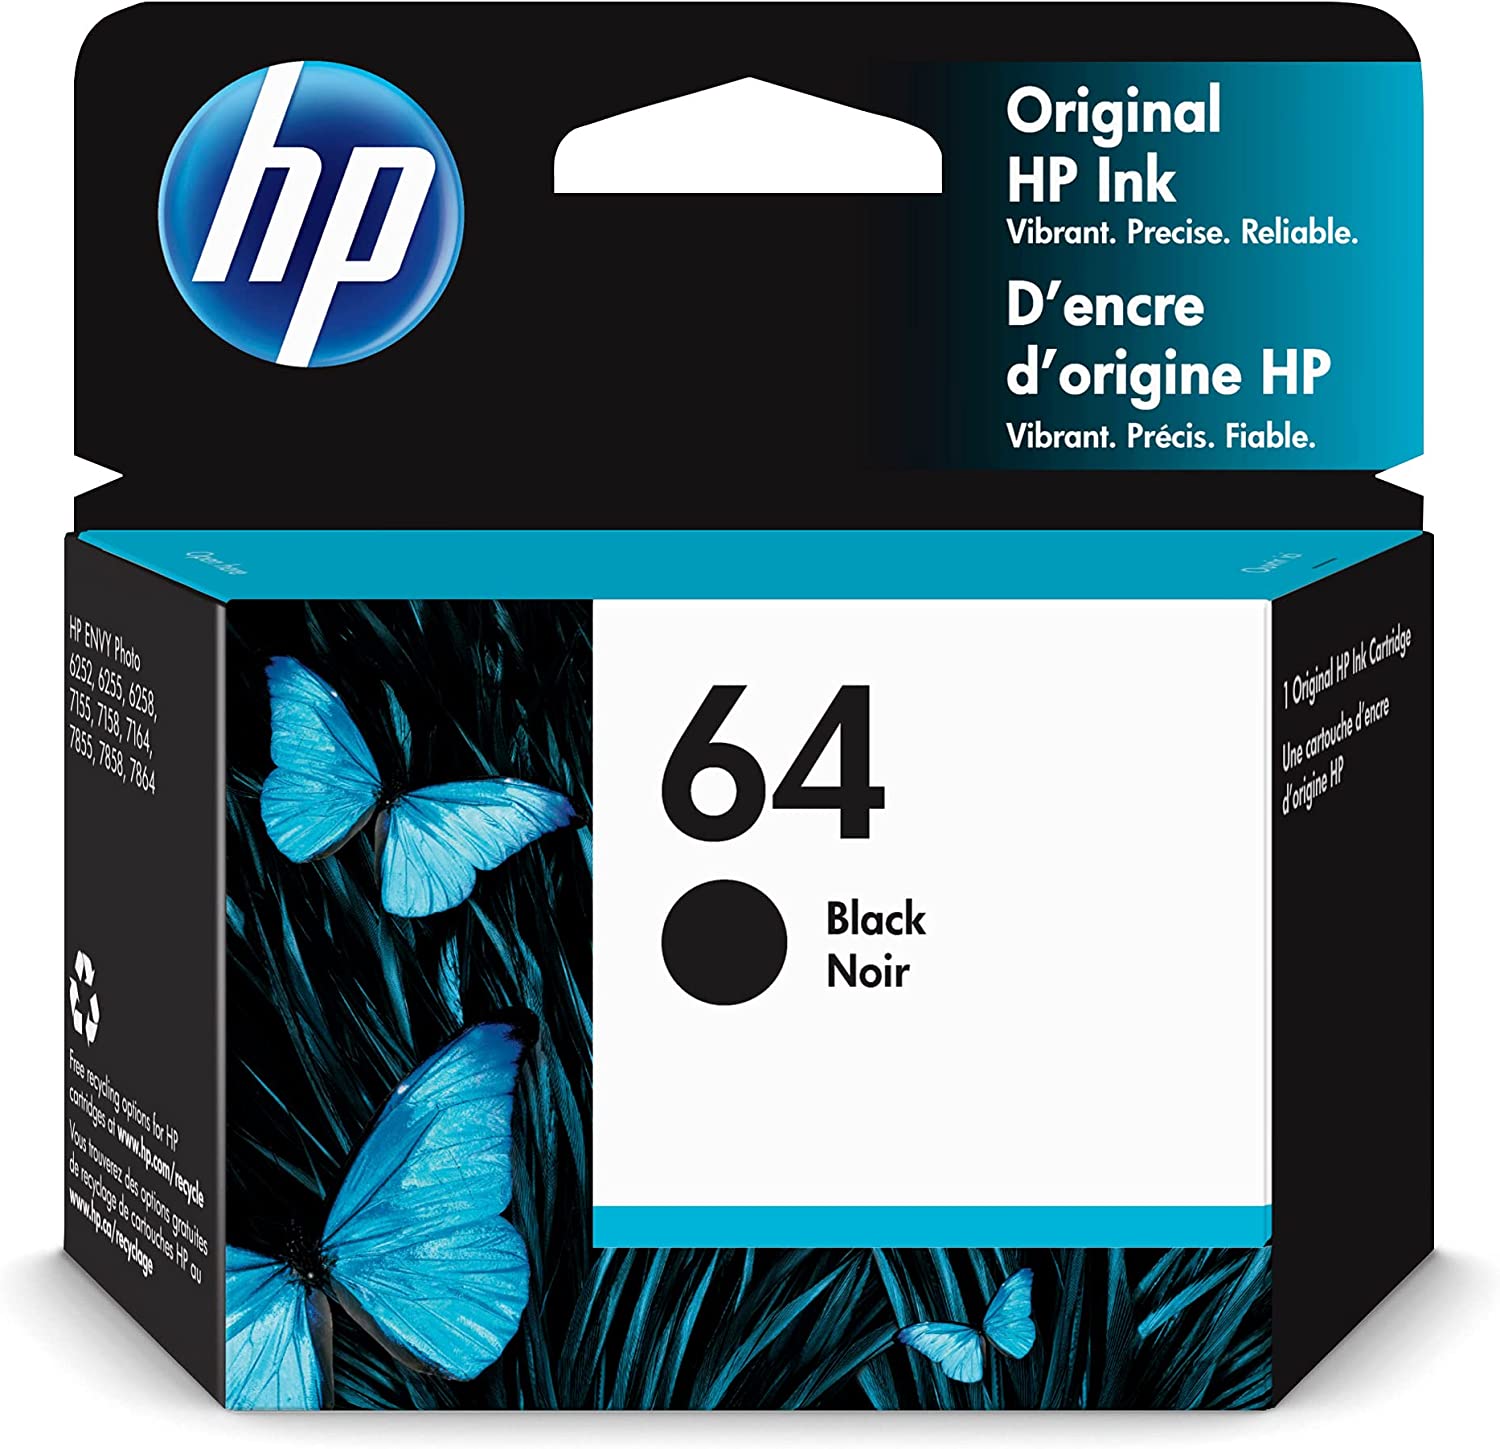 HP 64 블랙 잉크 카트리지 | HP ENVY Enspire 7950e와 함께 작동; ENVY 사진 6200, 7100, 7800; 탱고 시리즈 | 인스턴트 잉크 자격 | N9J90AN